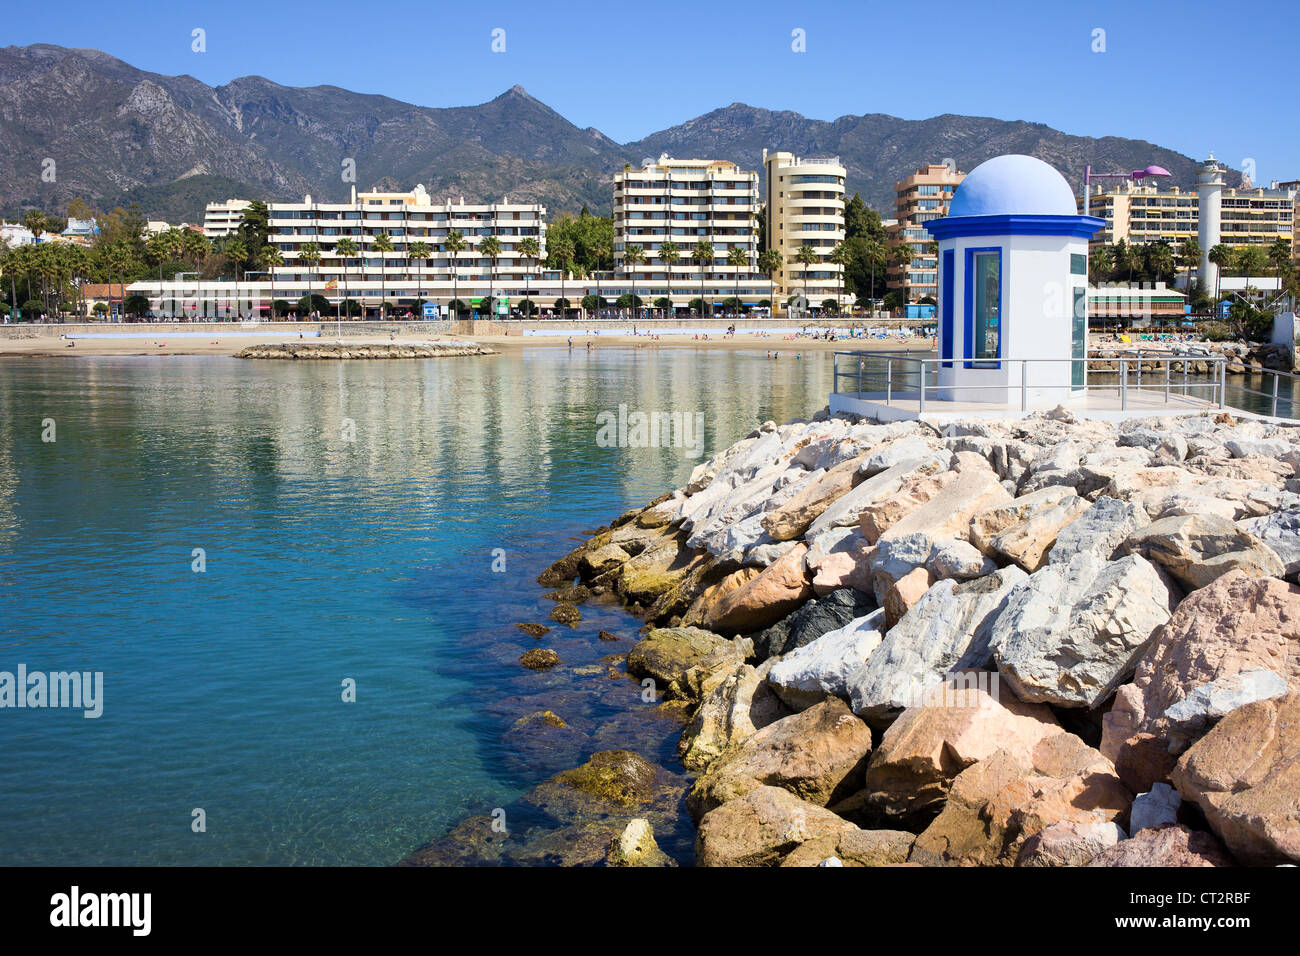 Struttura di frangionde sulla baia mare in località famose città di Marbella sulla Costa del Sol nel sud dell'Andalusia, Spagna, provincia di Malaga. Foto Stock